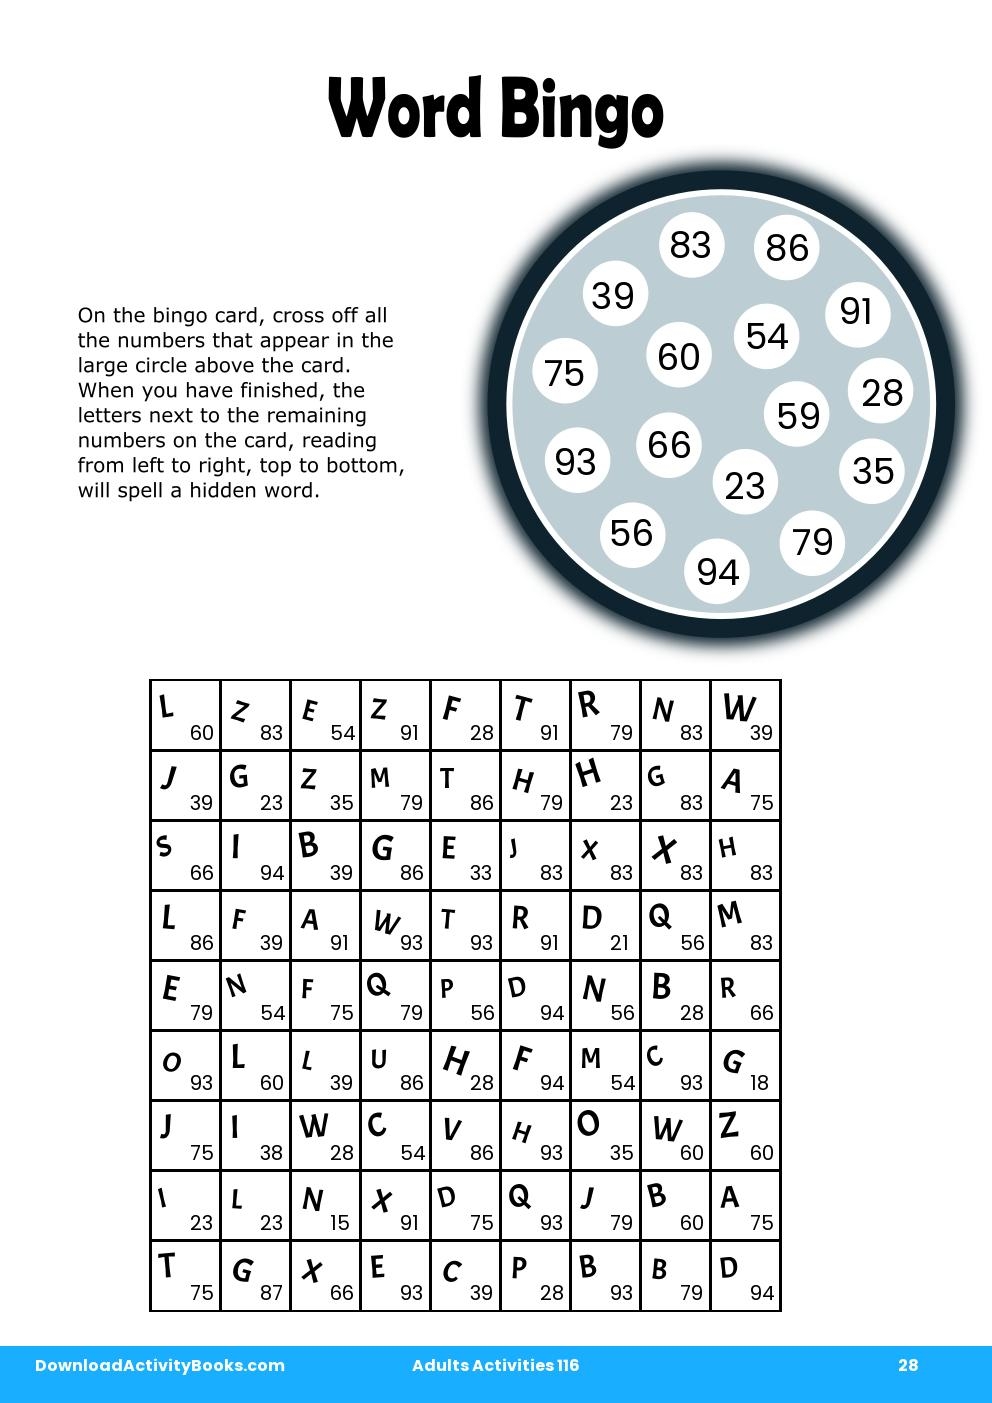 Word Bingo in Adults Activities 116